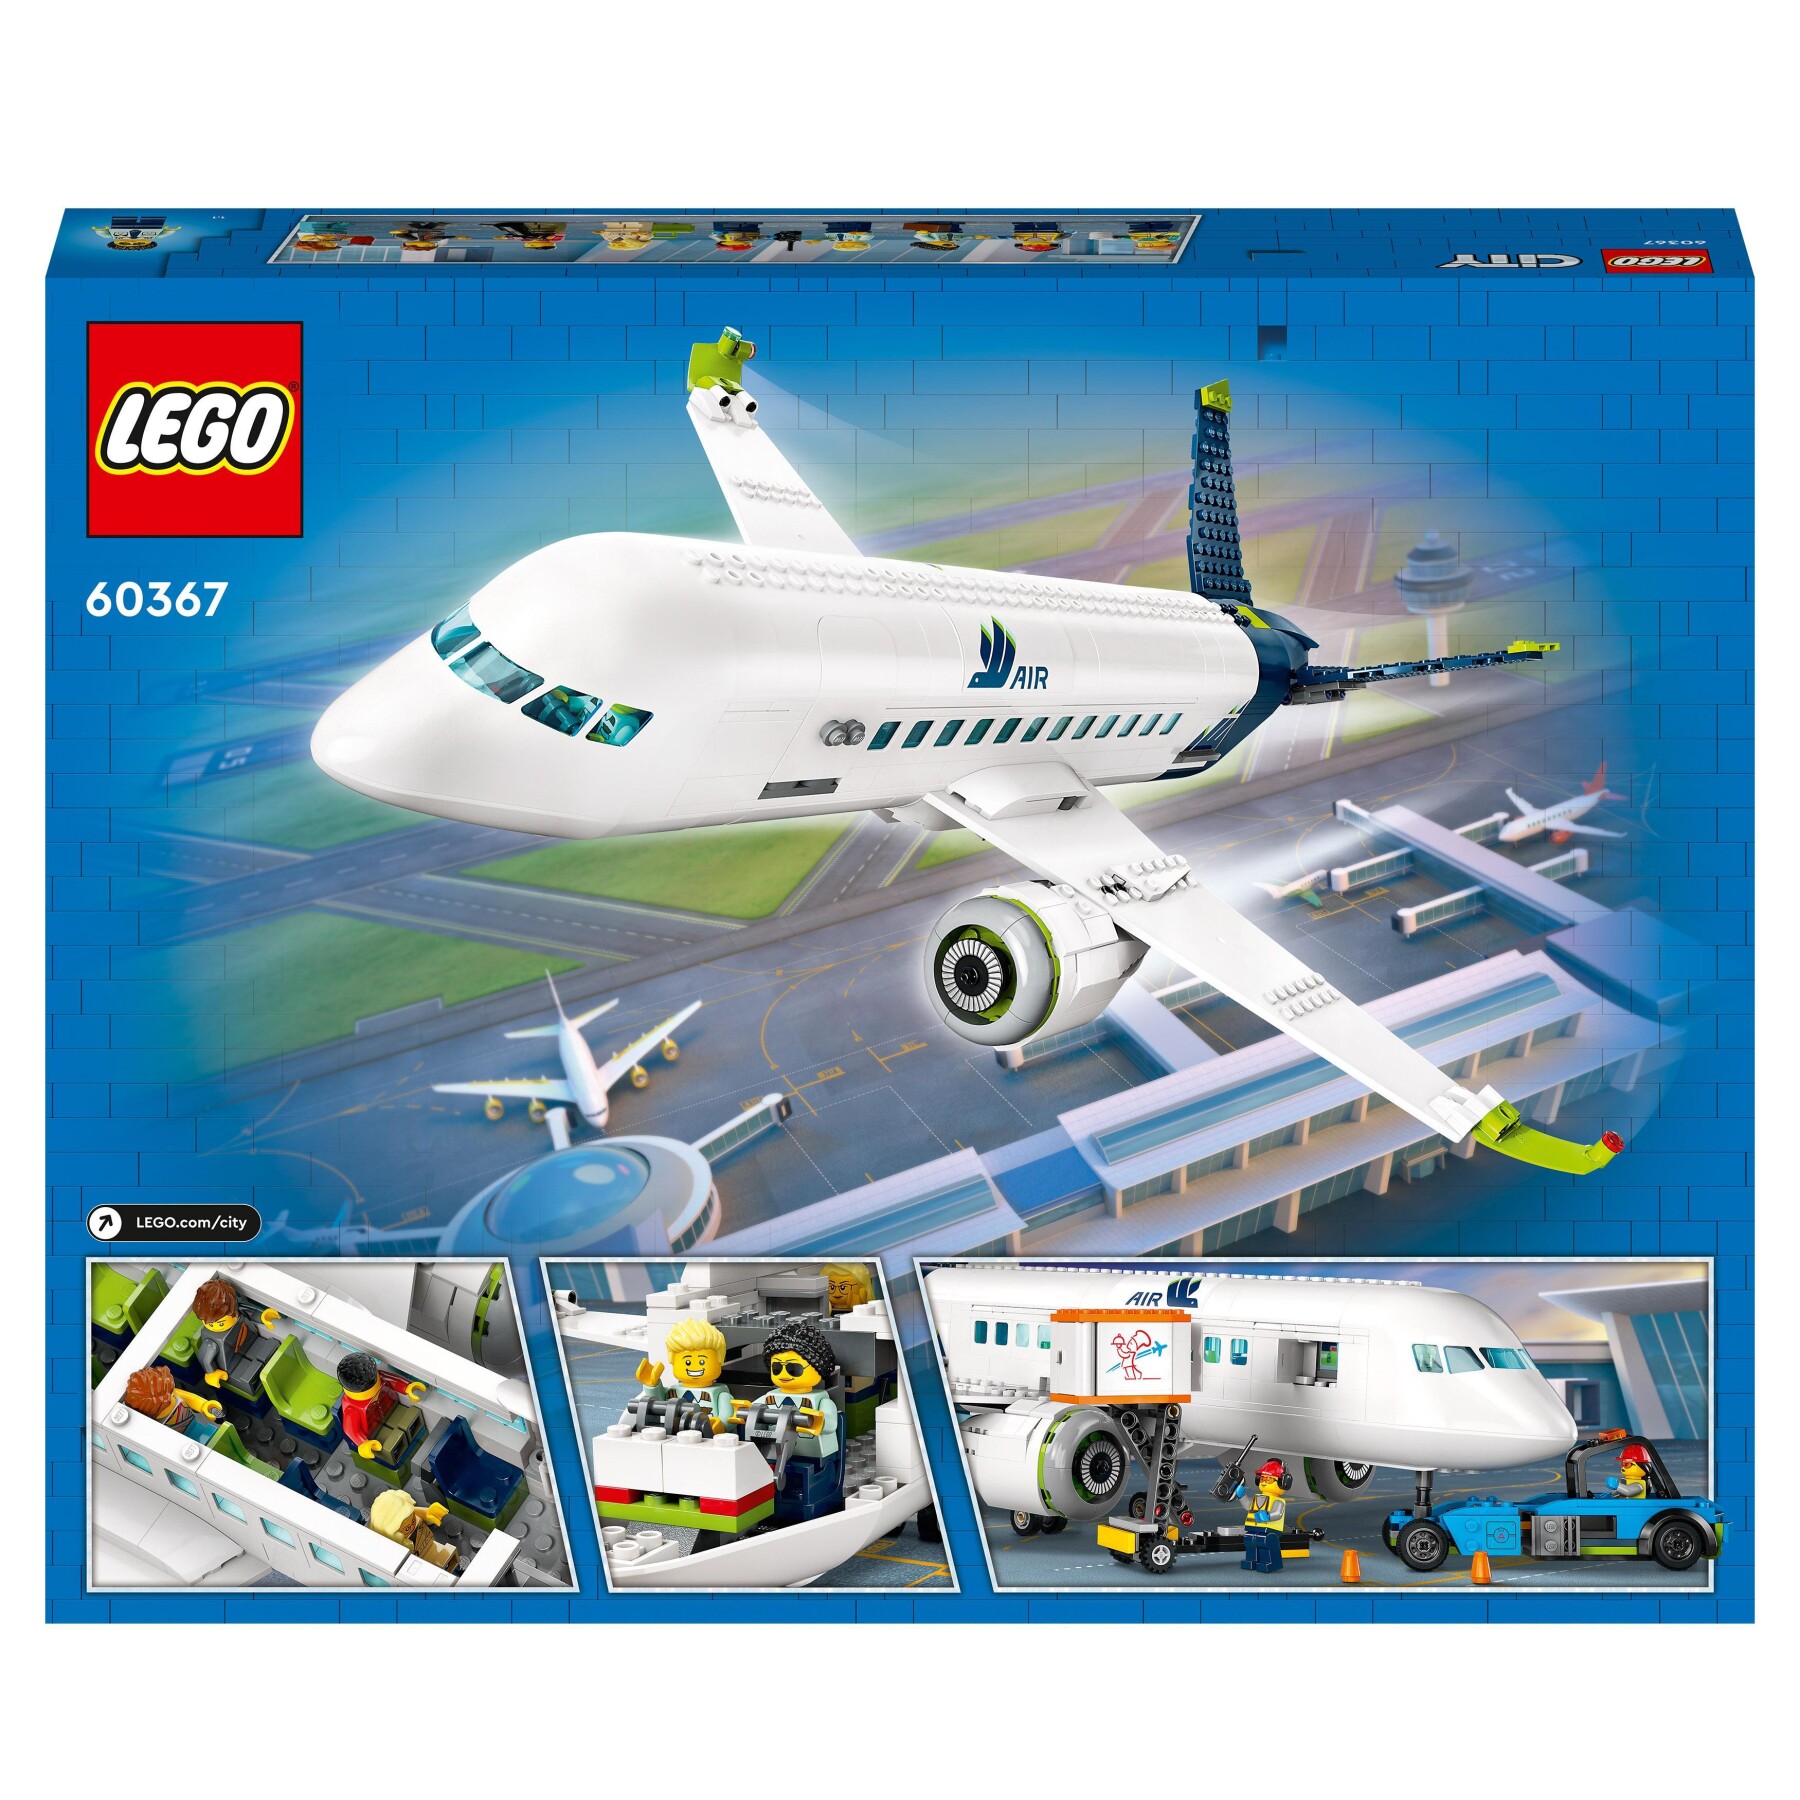 Lego city 60367 aereo passeggeri, modellino di aeroplano giocattolo da costruire con 9 minifigure e veicoli dell'aeroporto - LEGO CITY